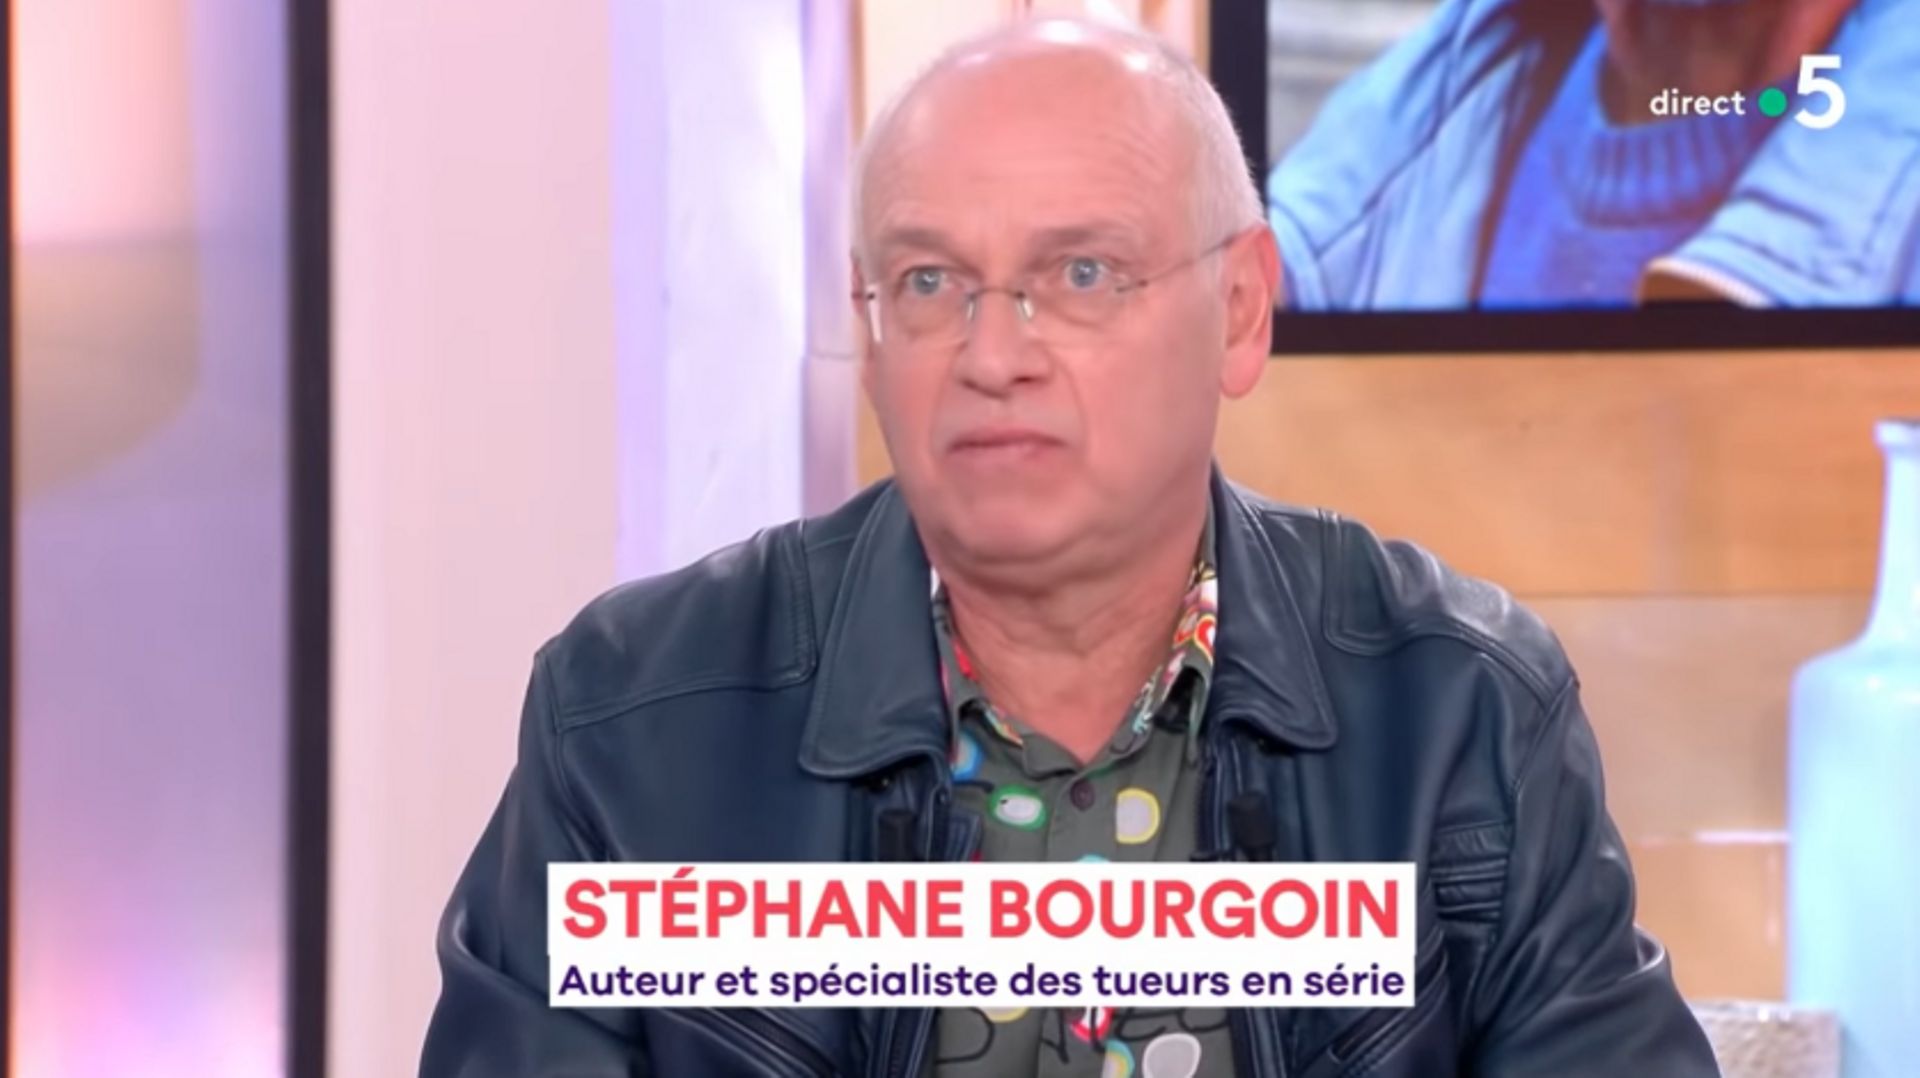 Stéphane Bourgoin, "spécialiste des tueurs en série" multi-invité dans les médias, ne serait-il qu'un mythomane ?